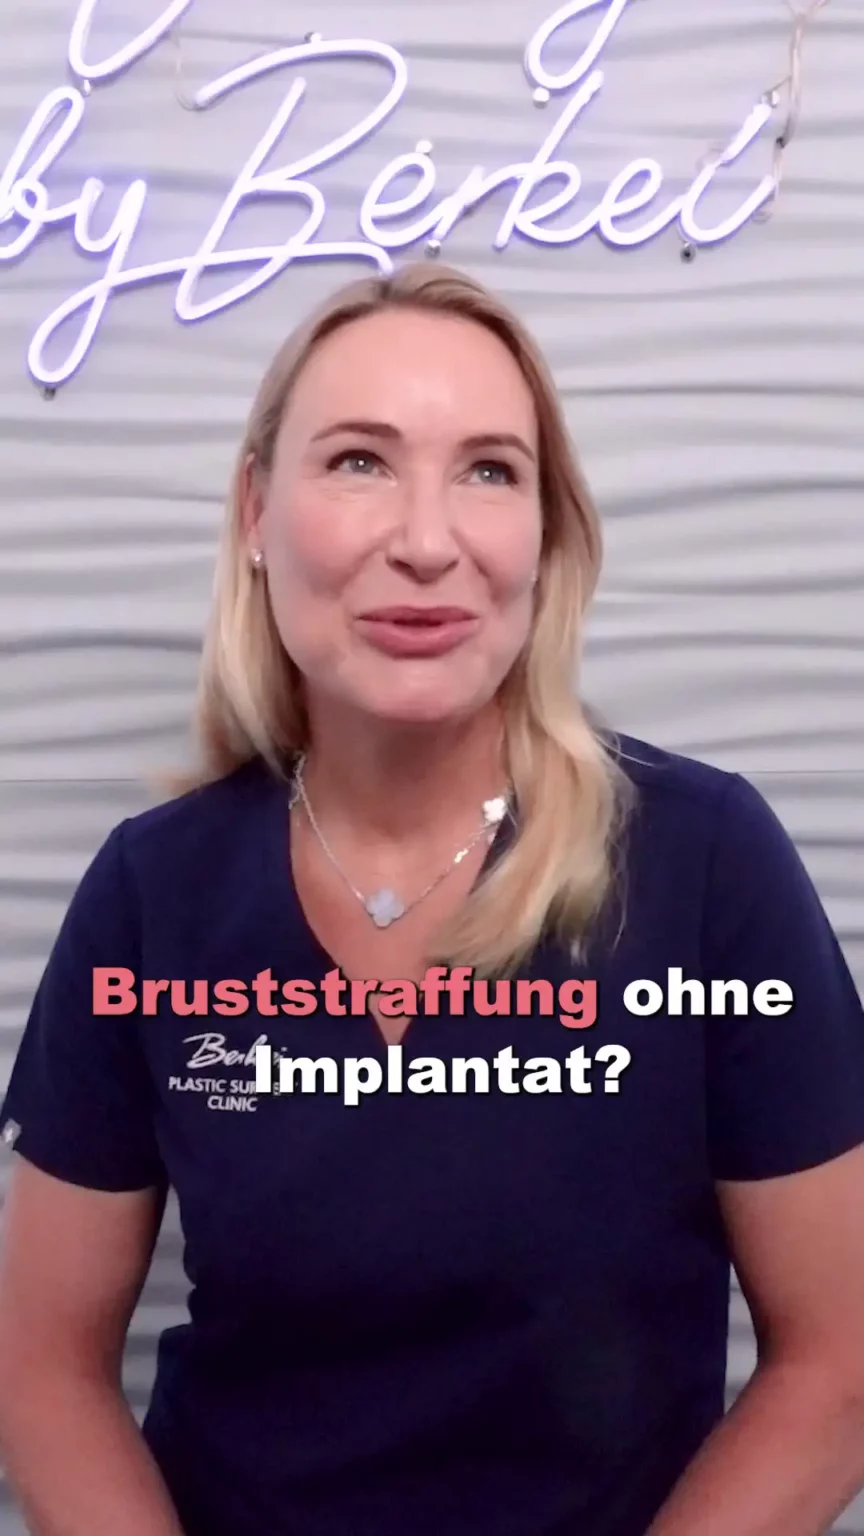 Aufnahme von Dr. Berkei mit dem Text "Bruststraffung ohne Implantat?".